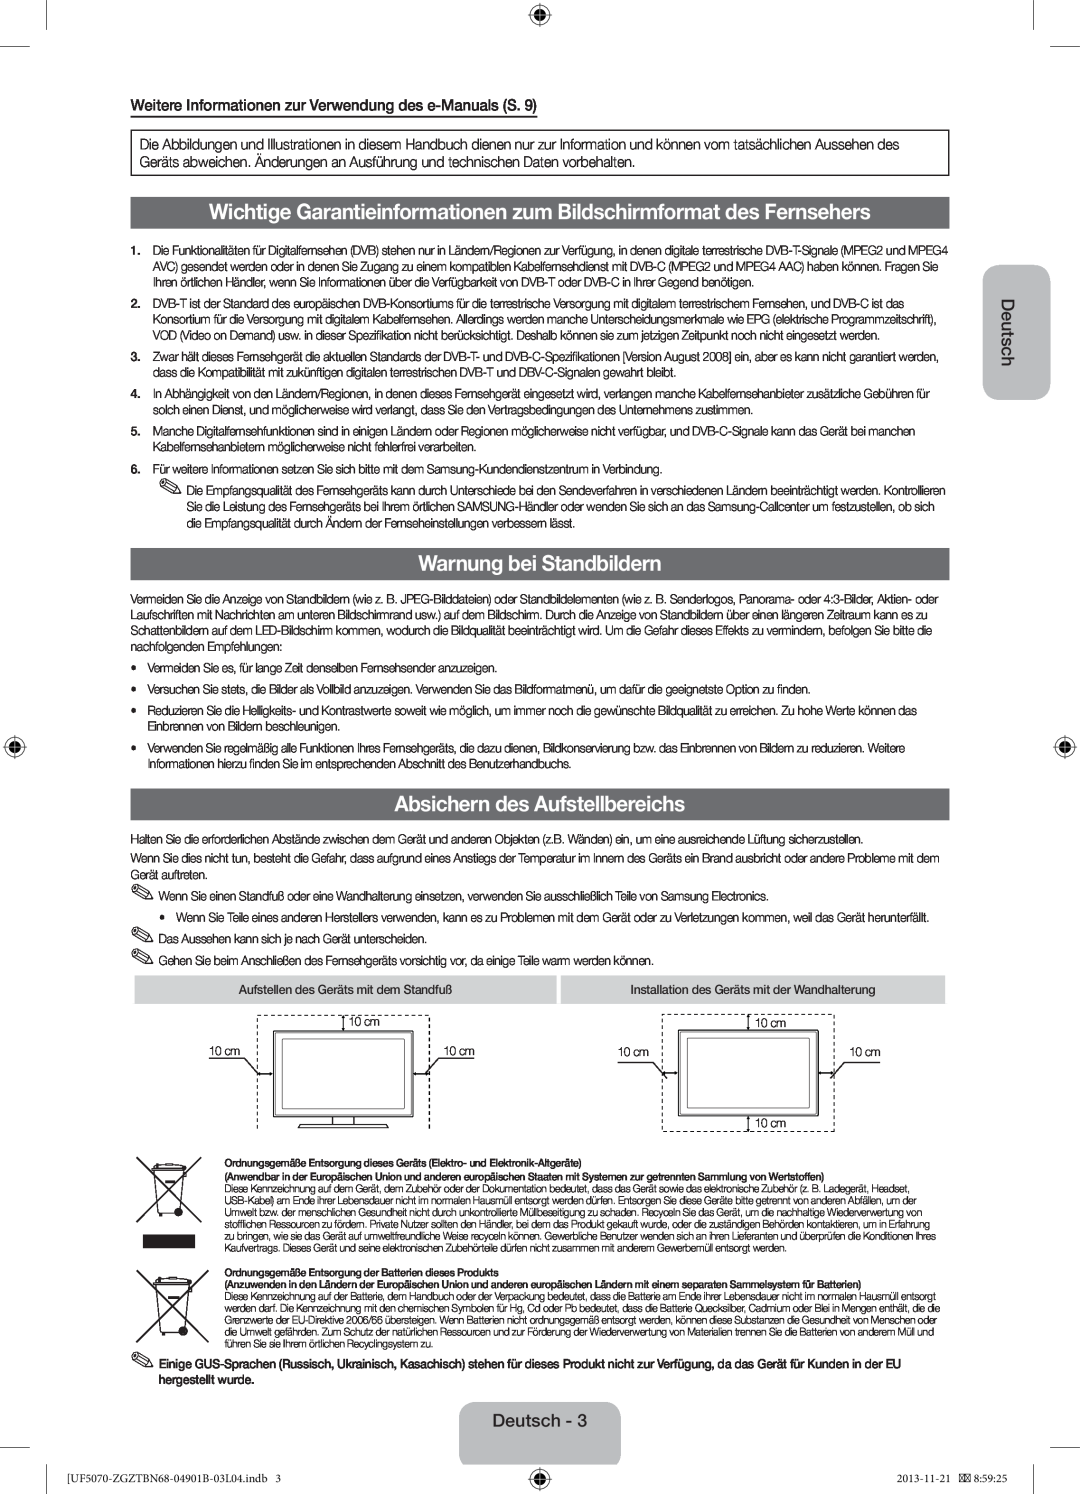 Samsung UE46F5000AWXZG manual Wichtige Garantieinformationen zum Bildschirmformat des Fernsehers, Warnung bei Standbildern 